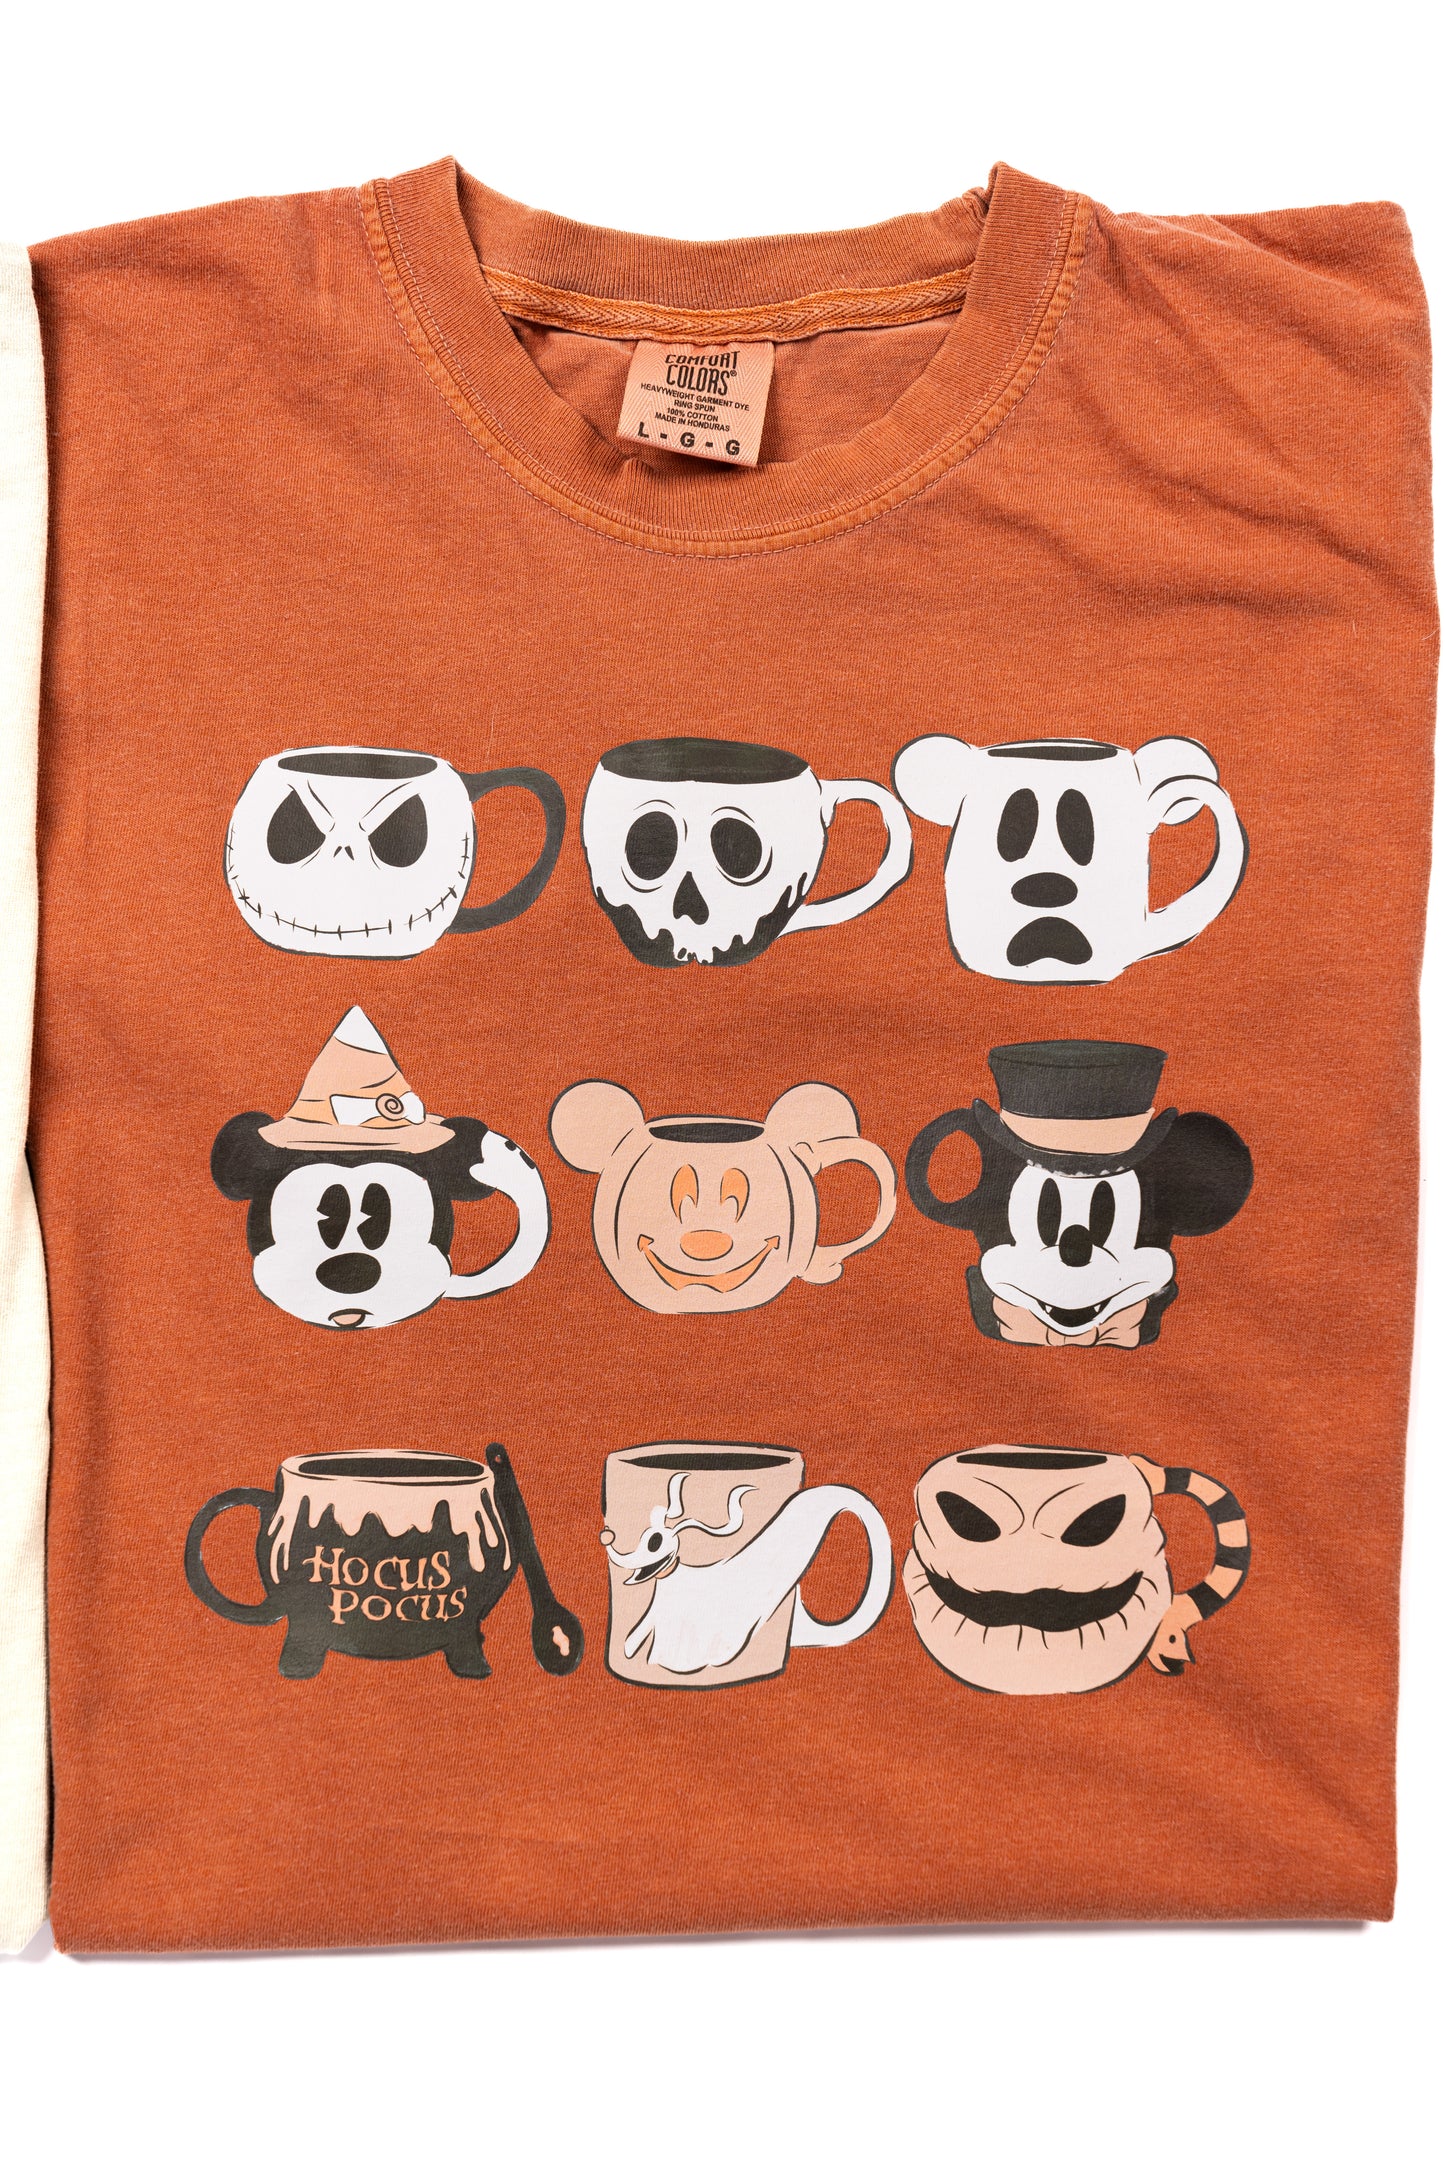 Magic Mugs (Orange) - Tee (Vintage Rust, Short Sleeve)